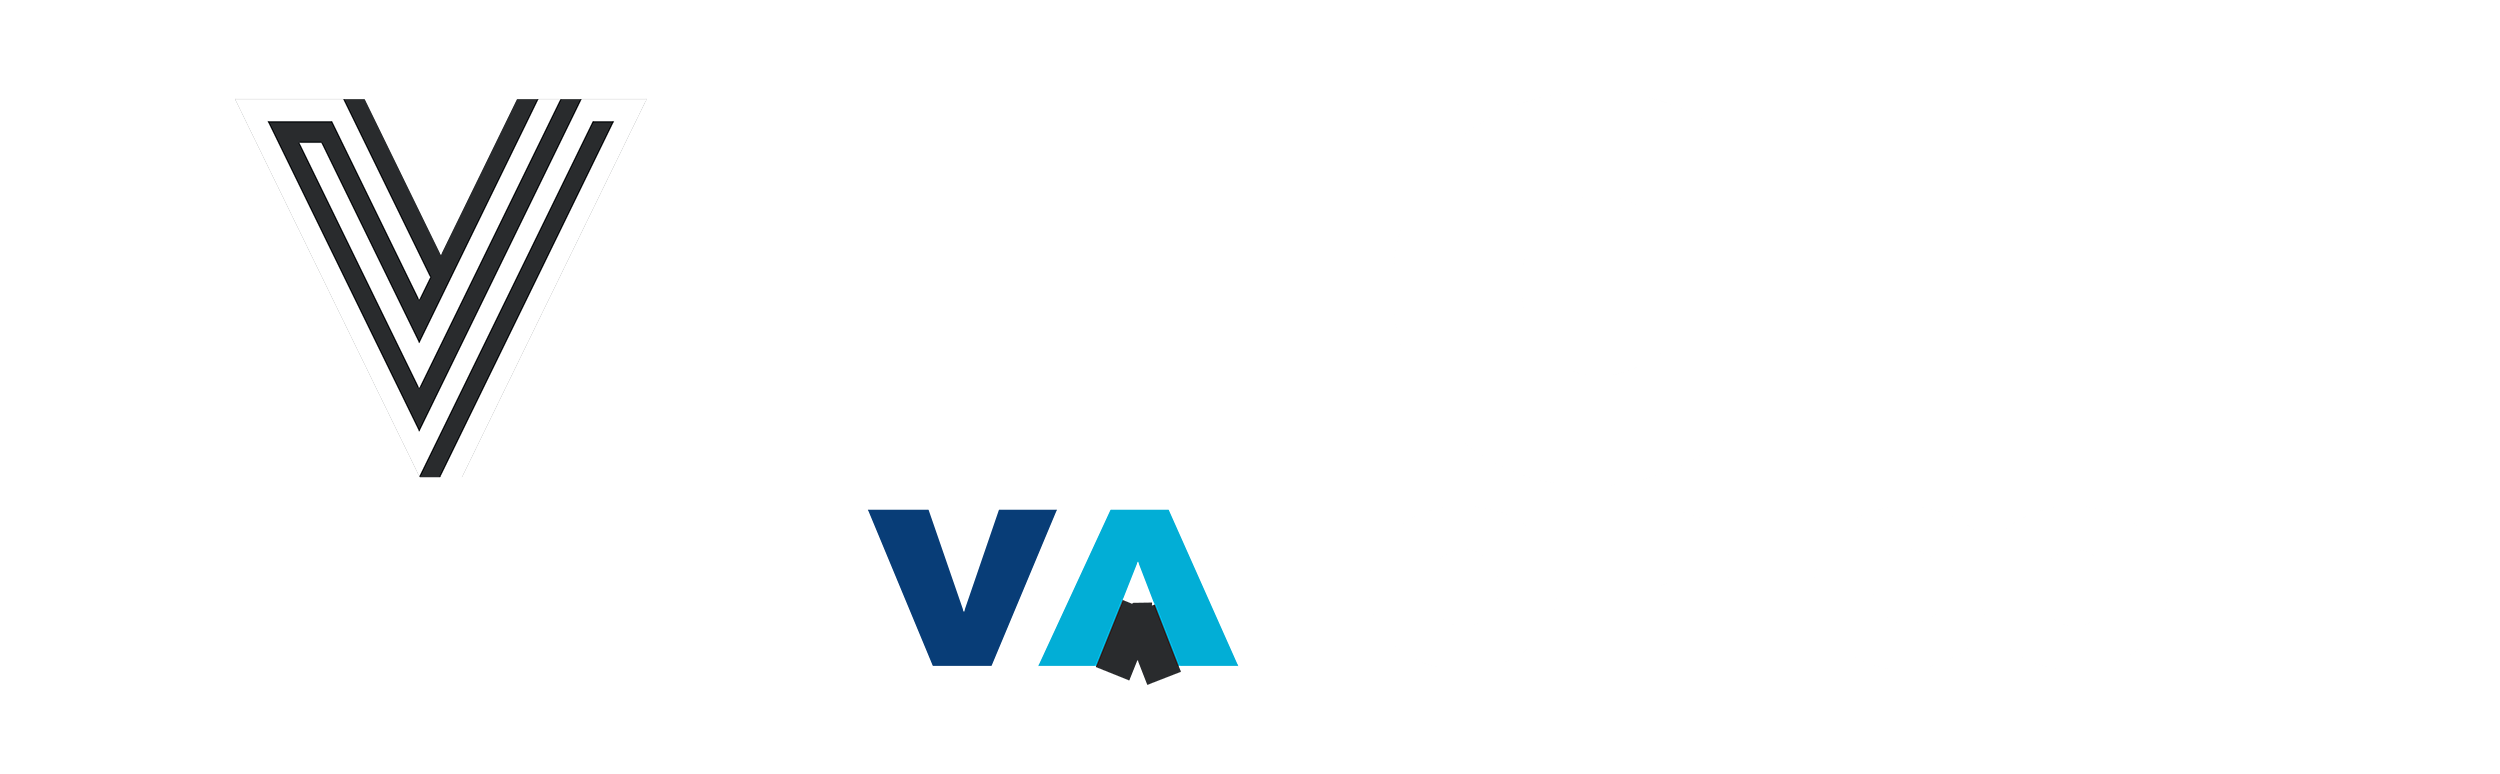 VTECH Elevator Co